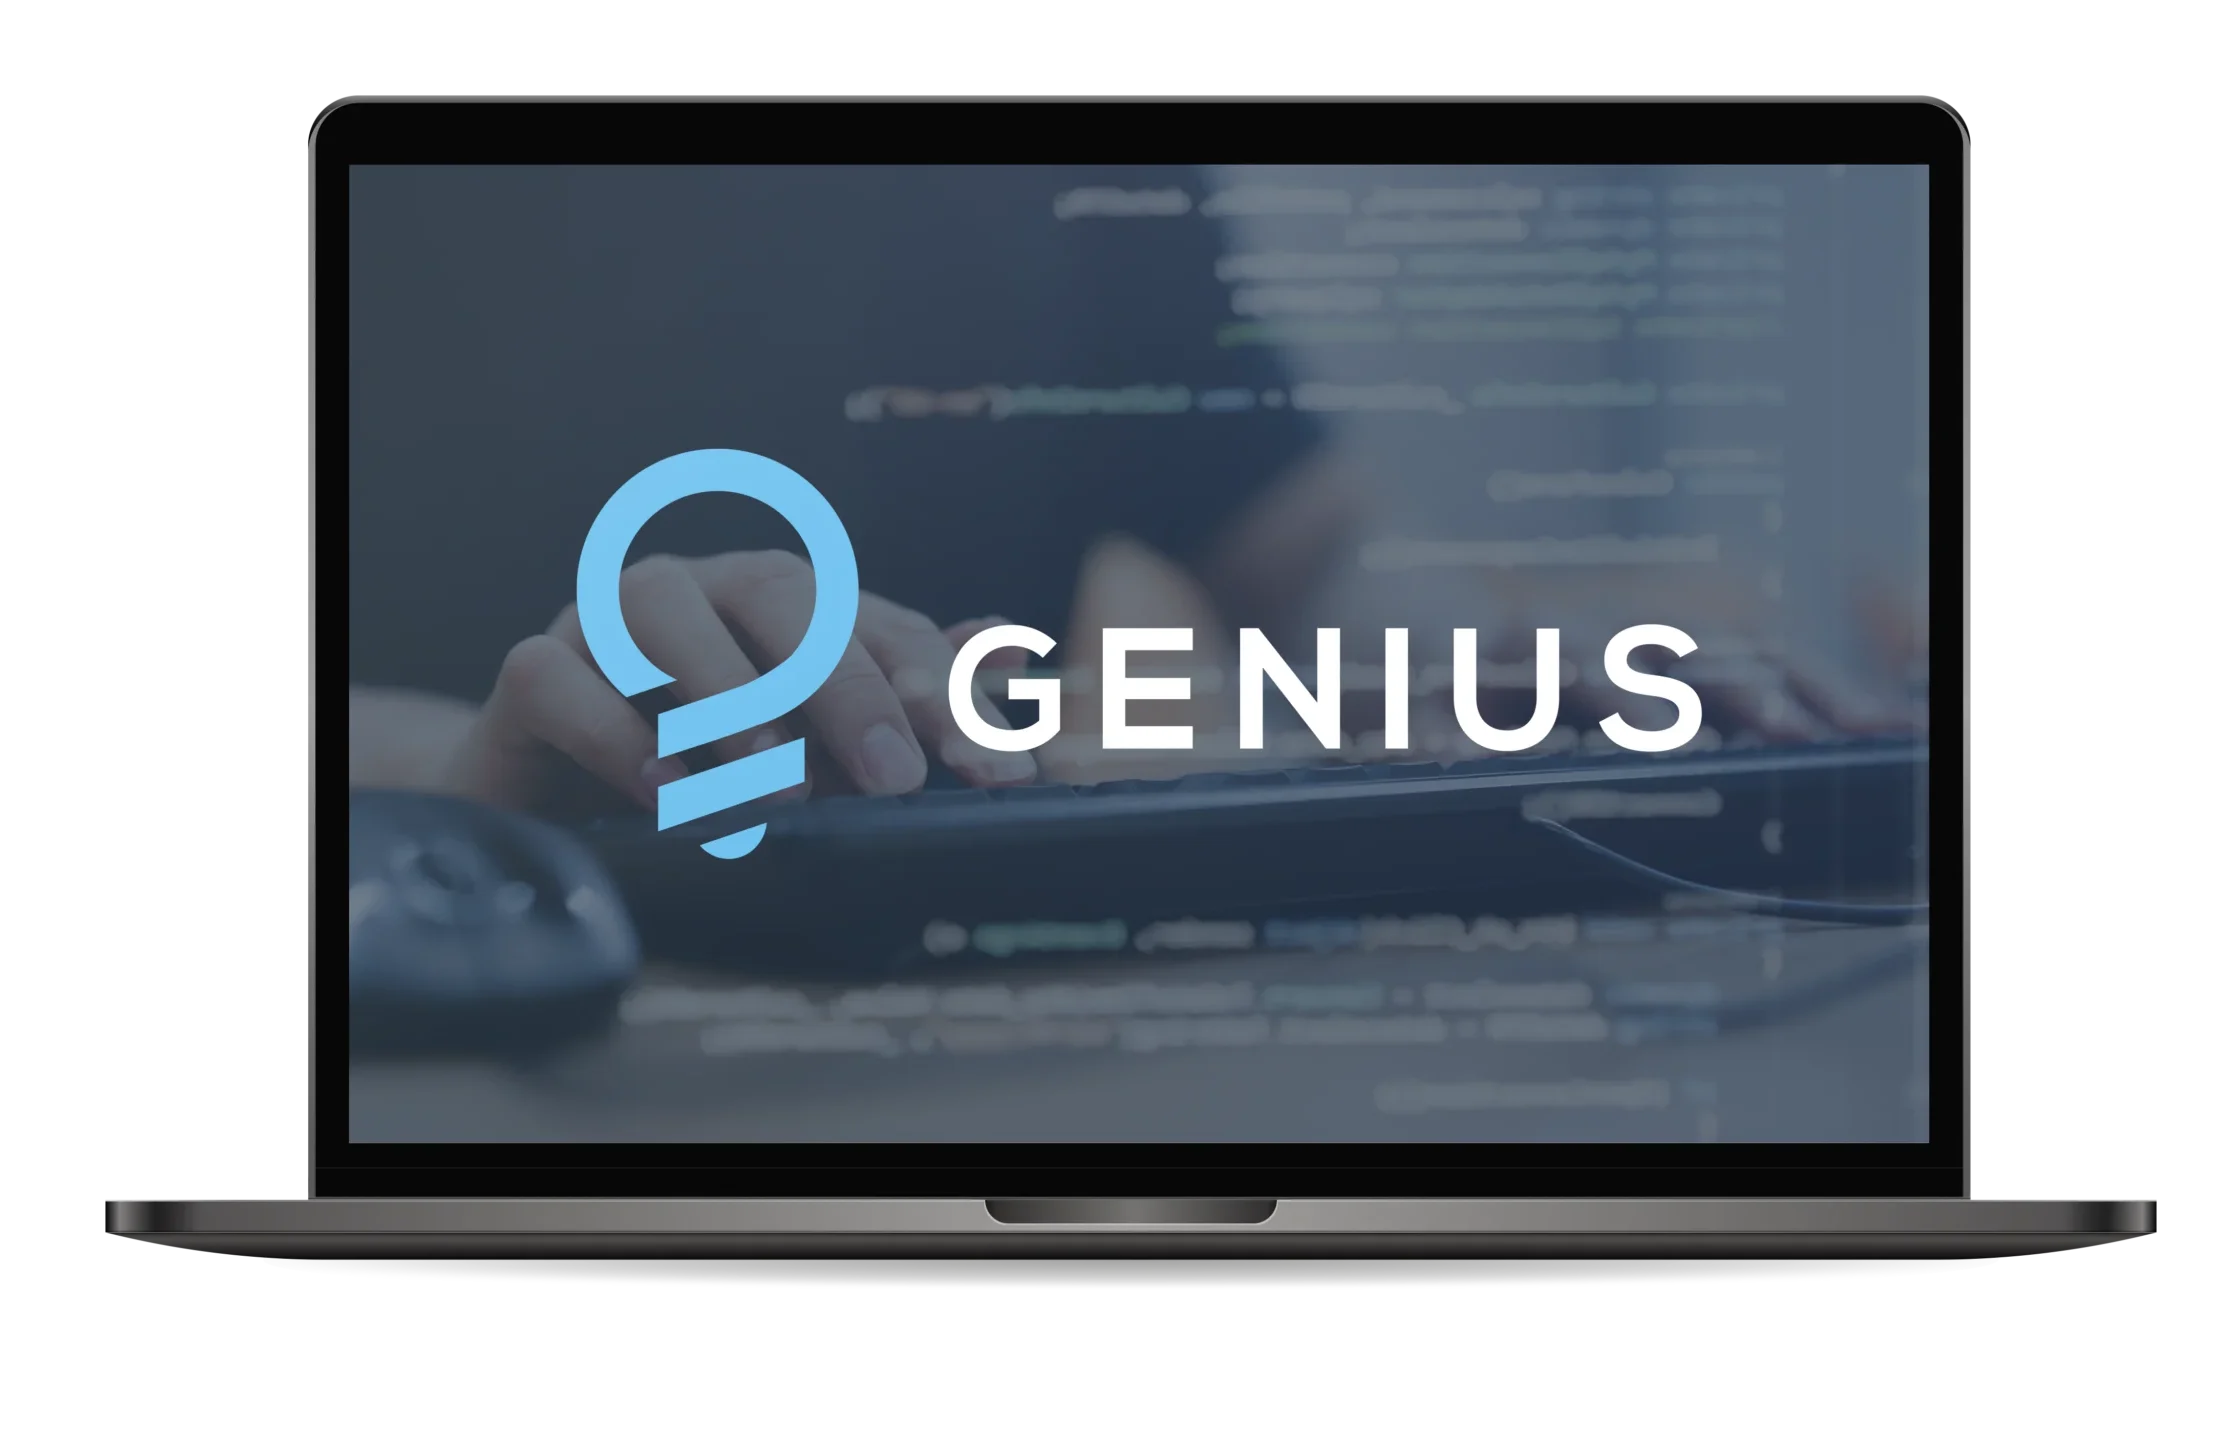 genius logo in laptop